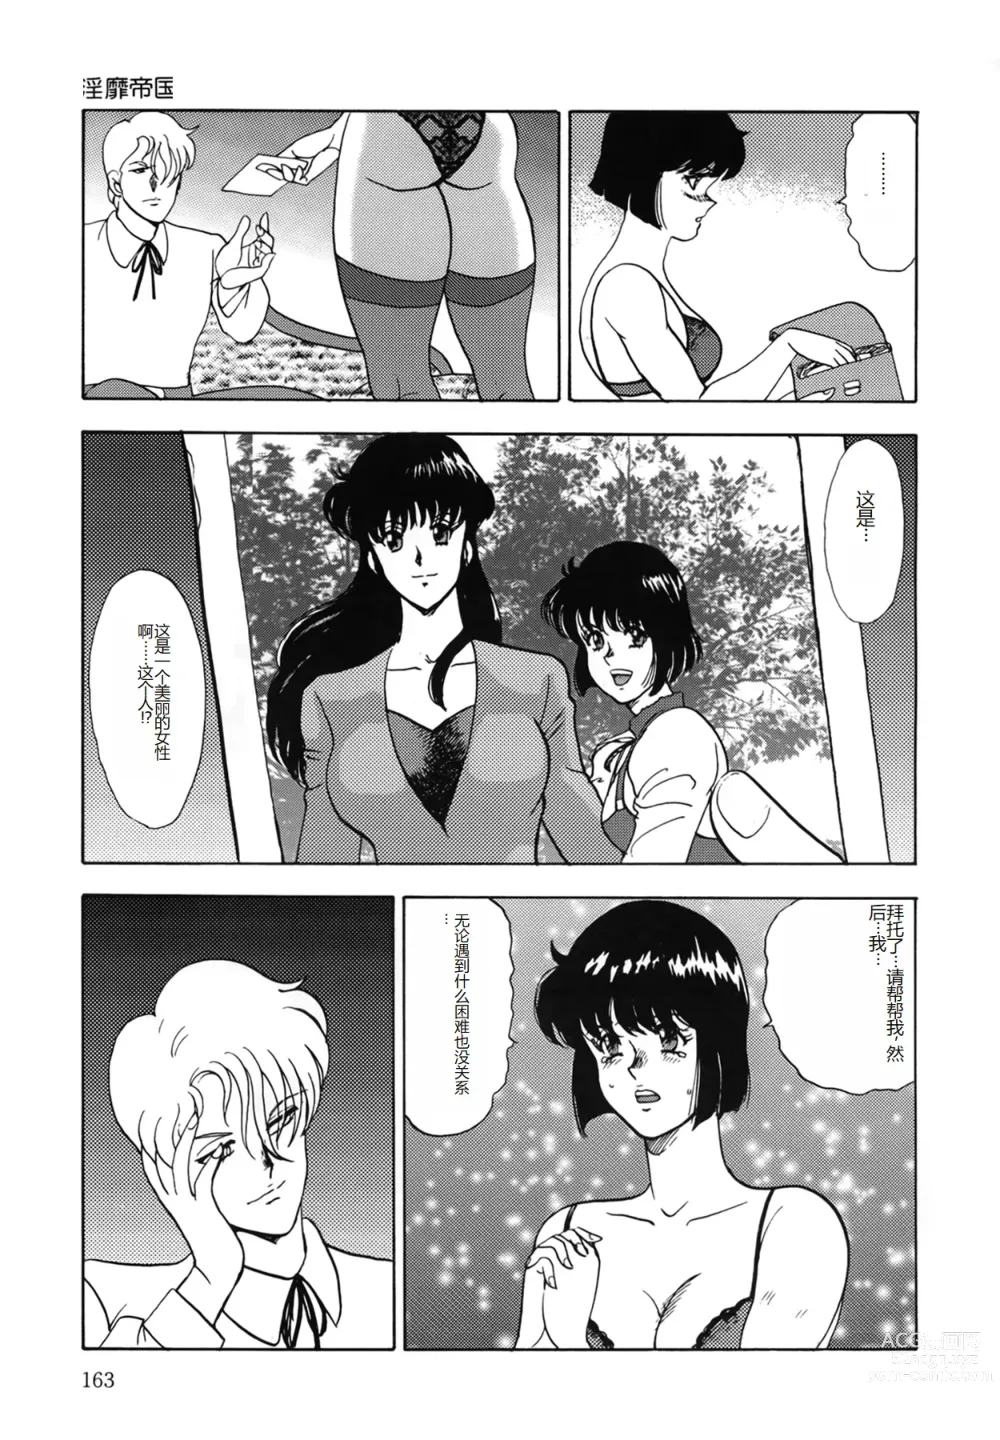 Page 163 of manga Inbi Teikoku